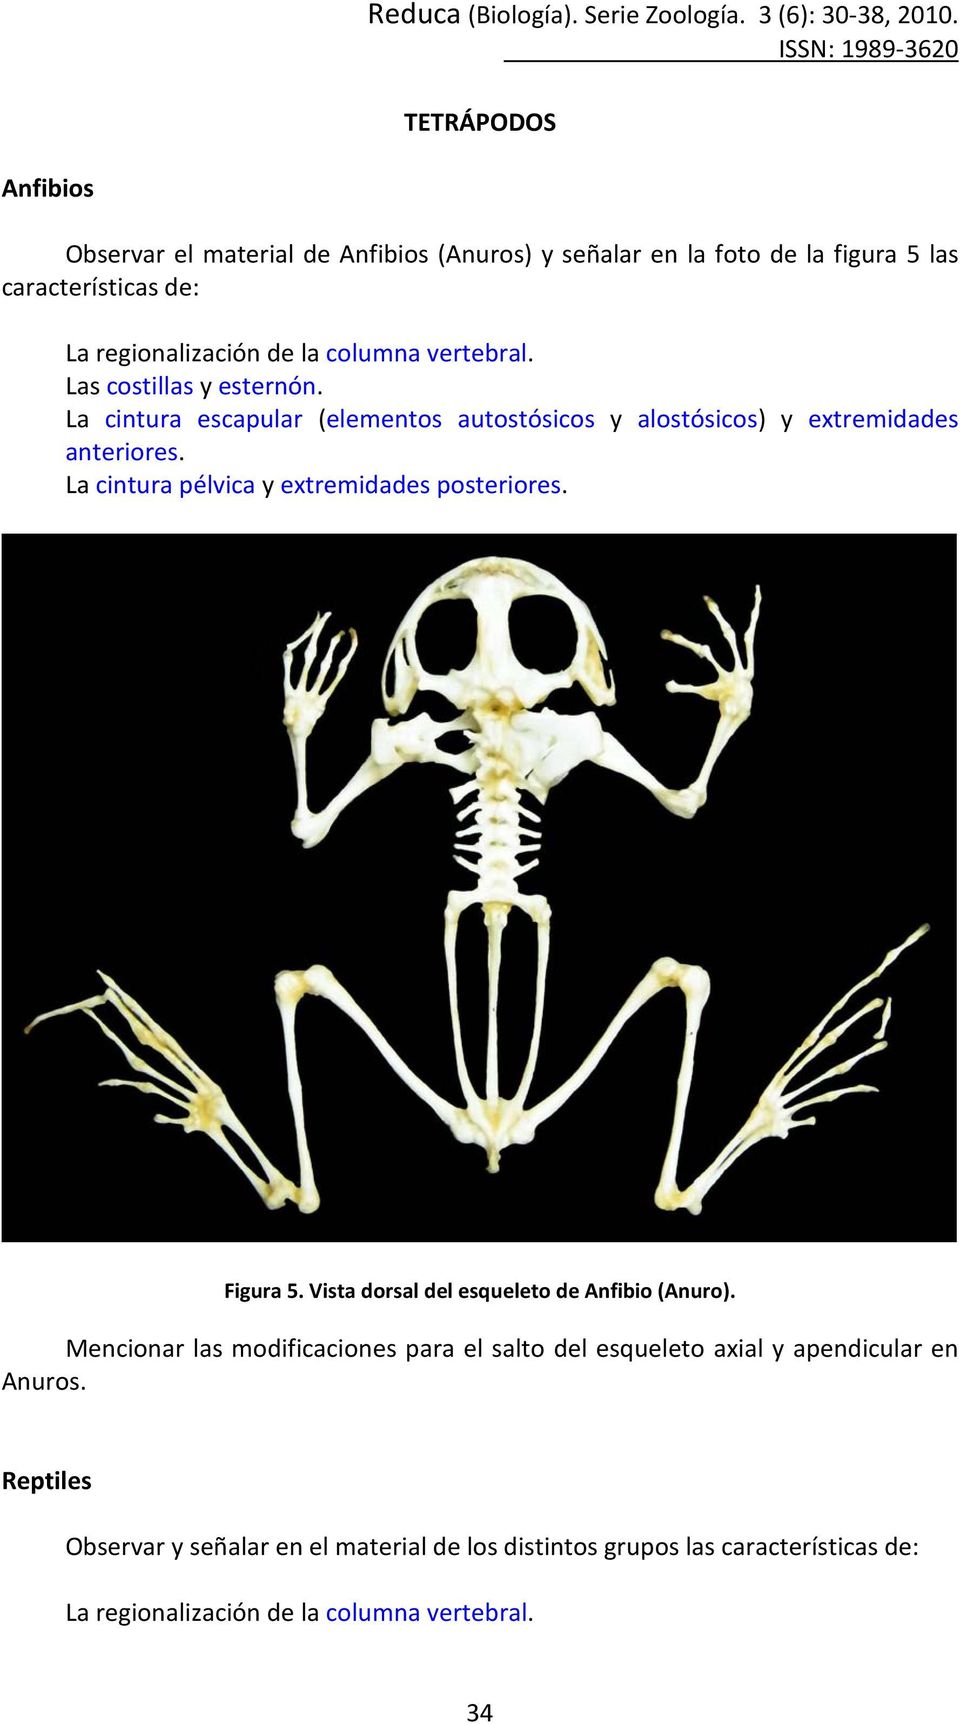 Figura 5. Vista dorsal del esqueleto de Anfibio (Anuro).